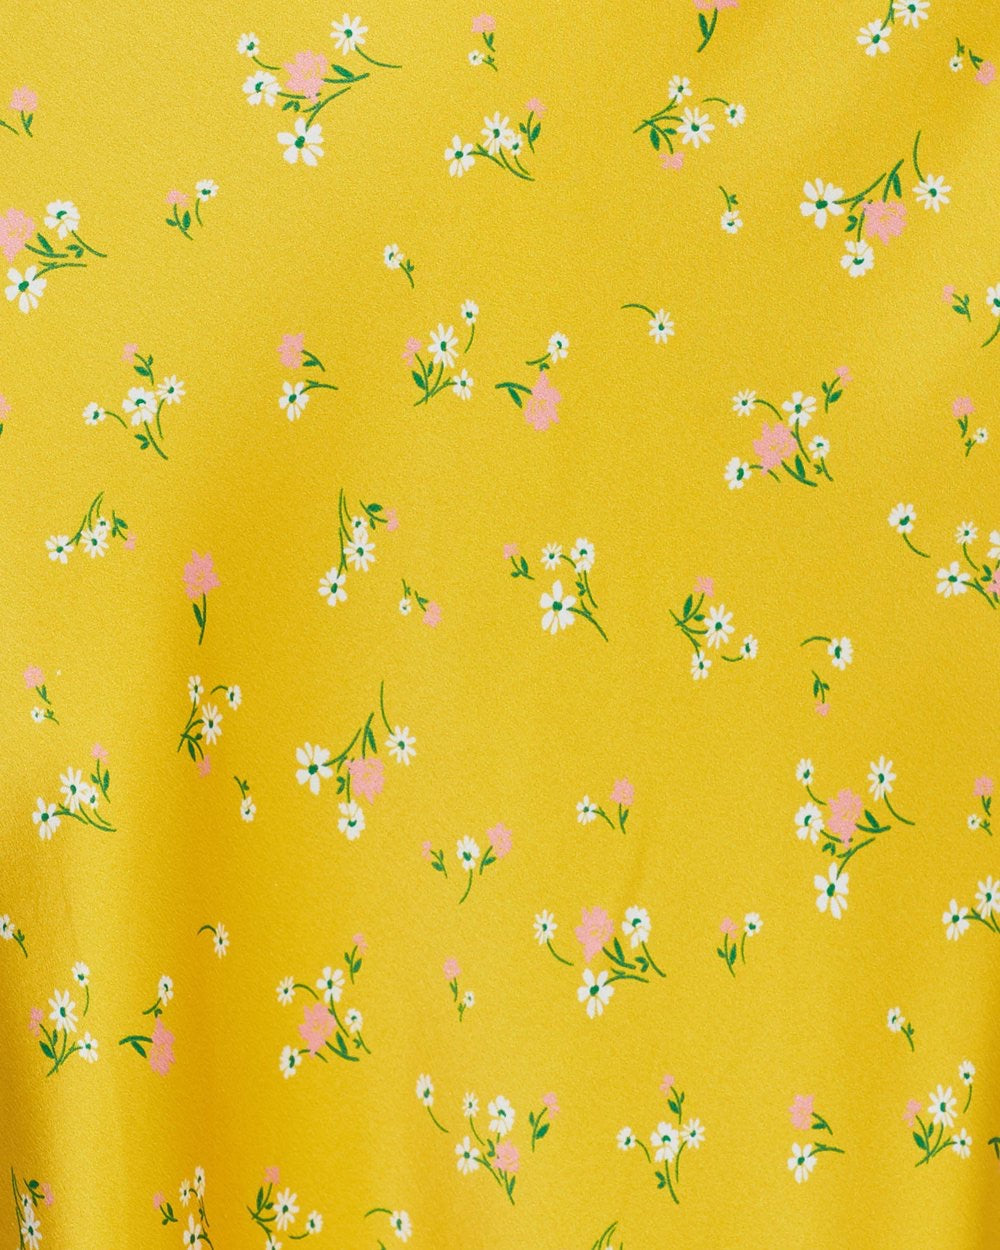 Dahlia Floral Satin Midi Skirt in Yellow | VYEN